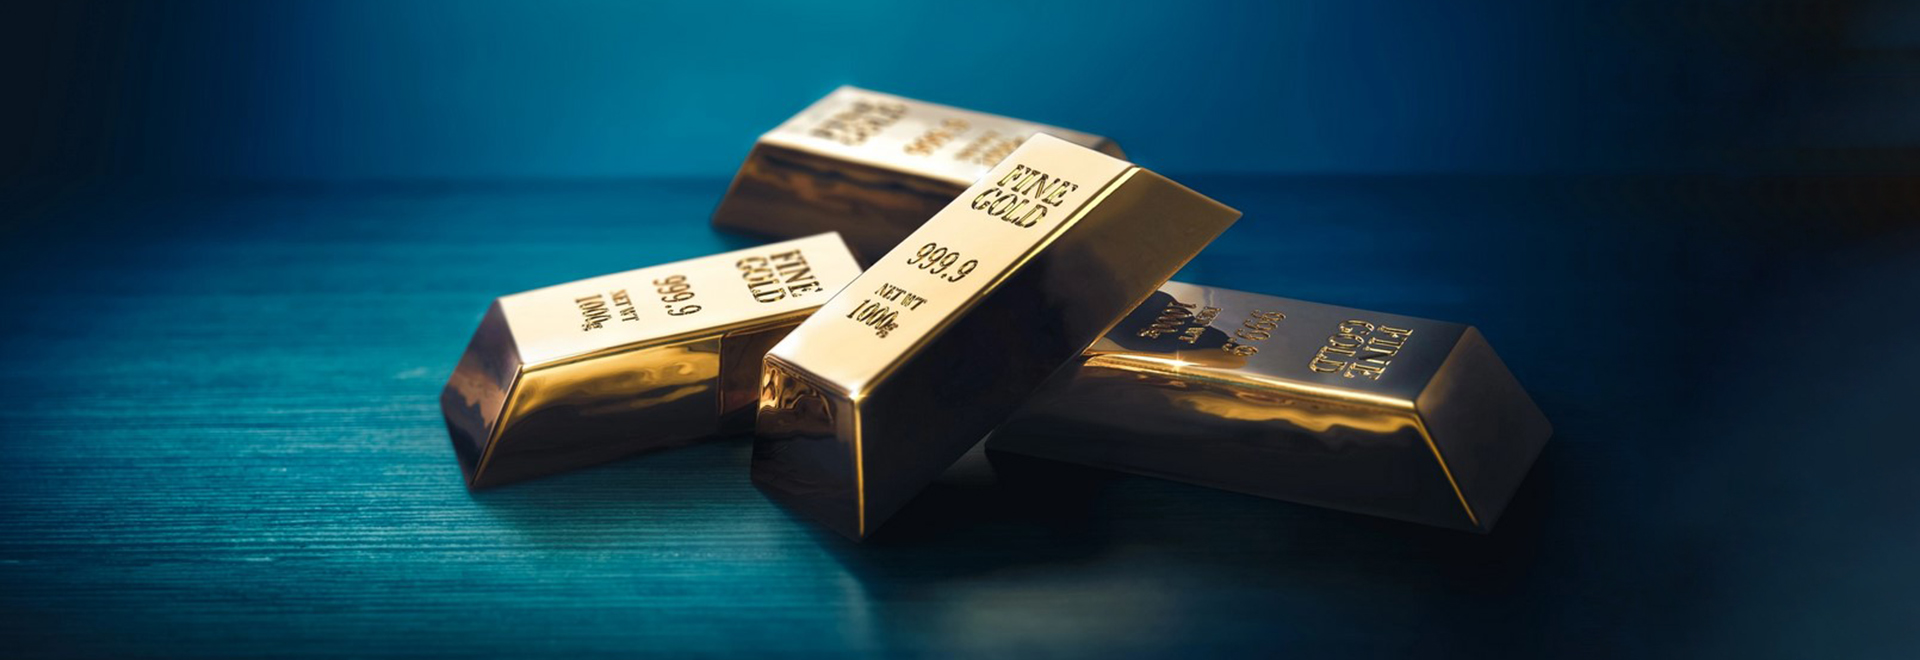 gold price struggle to break resistance